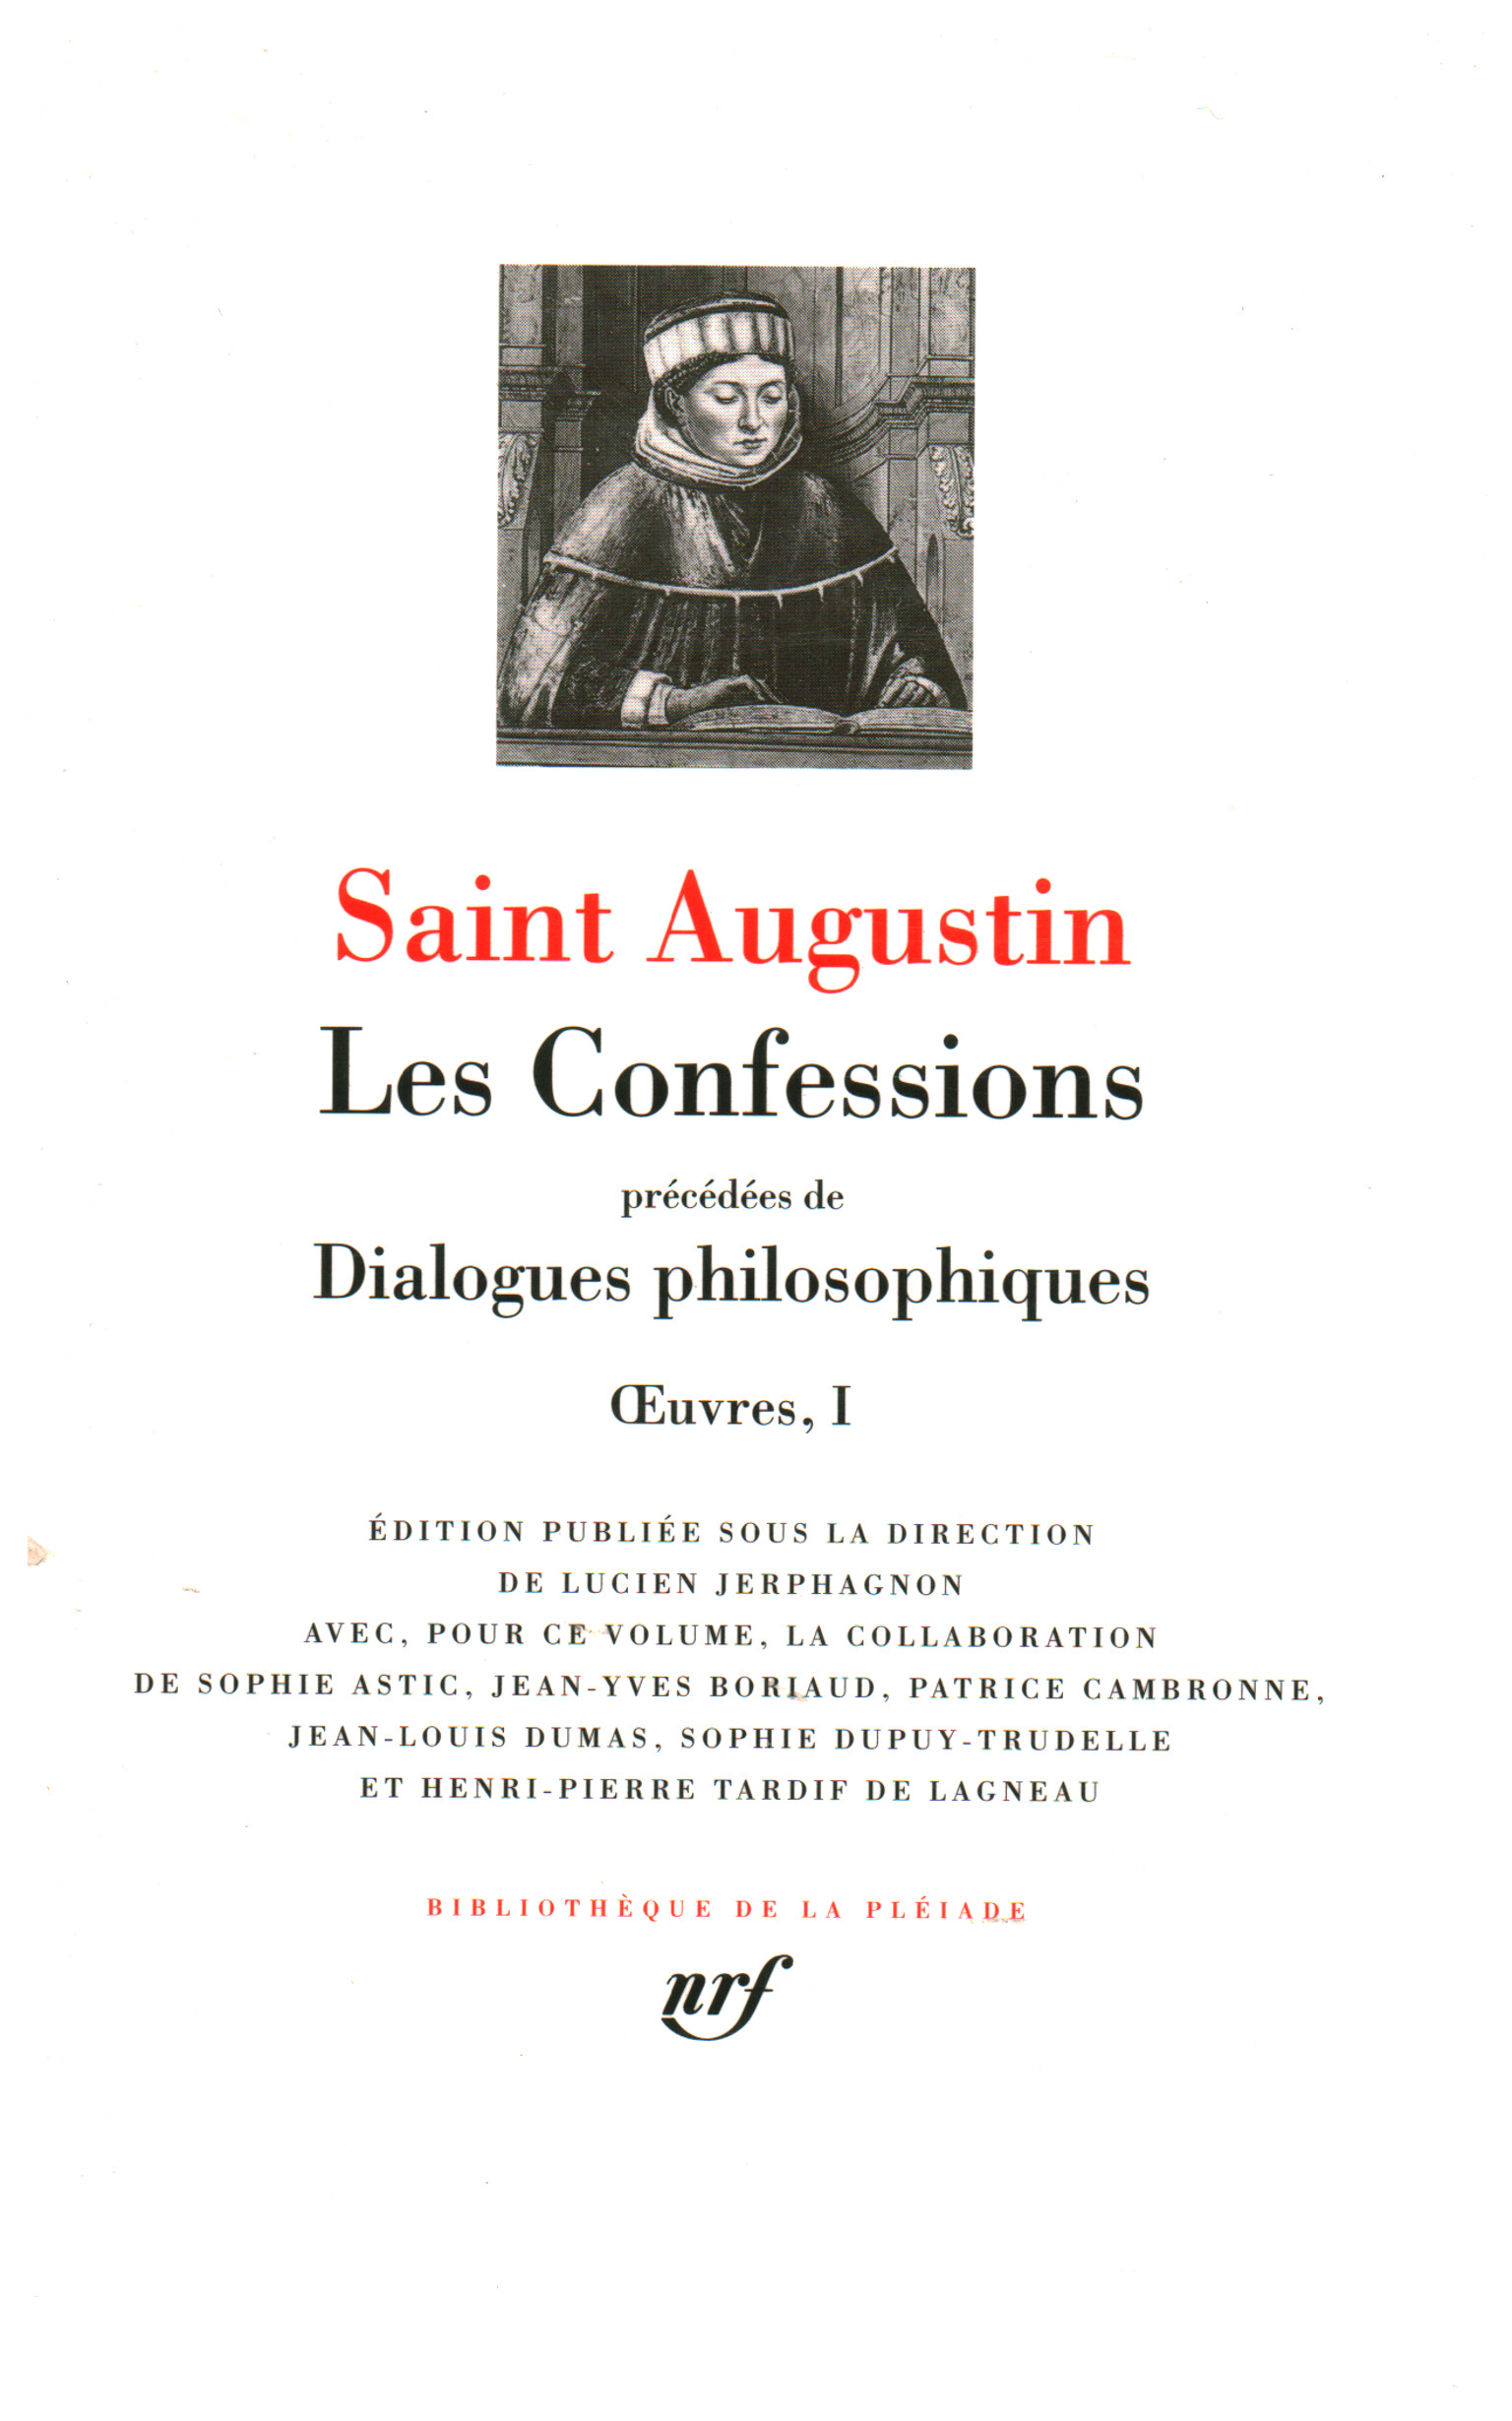 Les Confessions, Saint Augustin